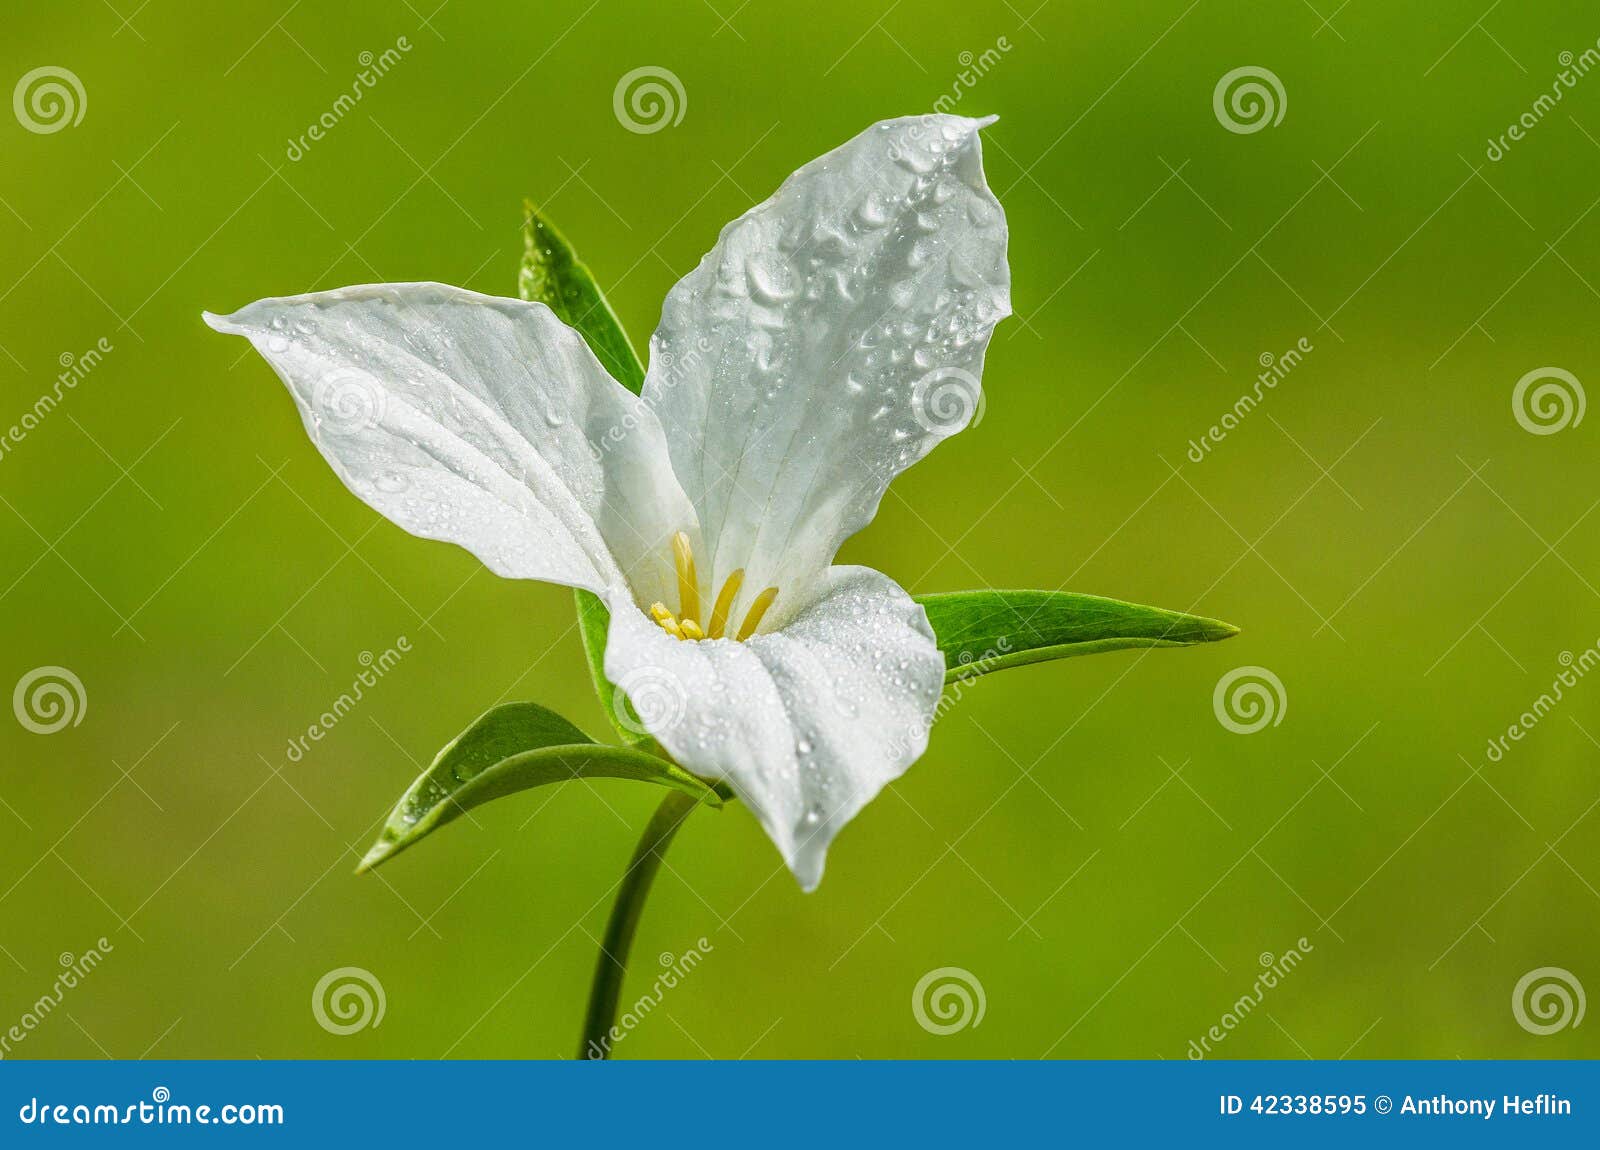 white trillium flower